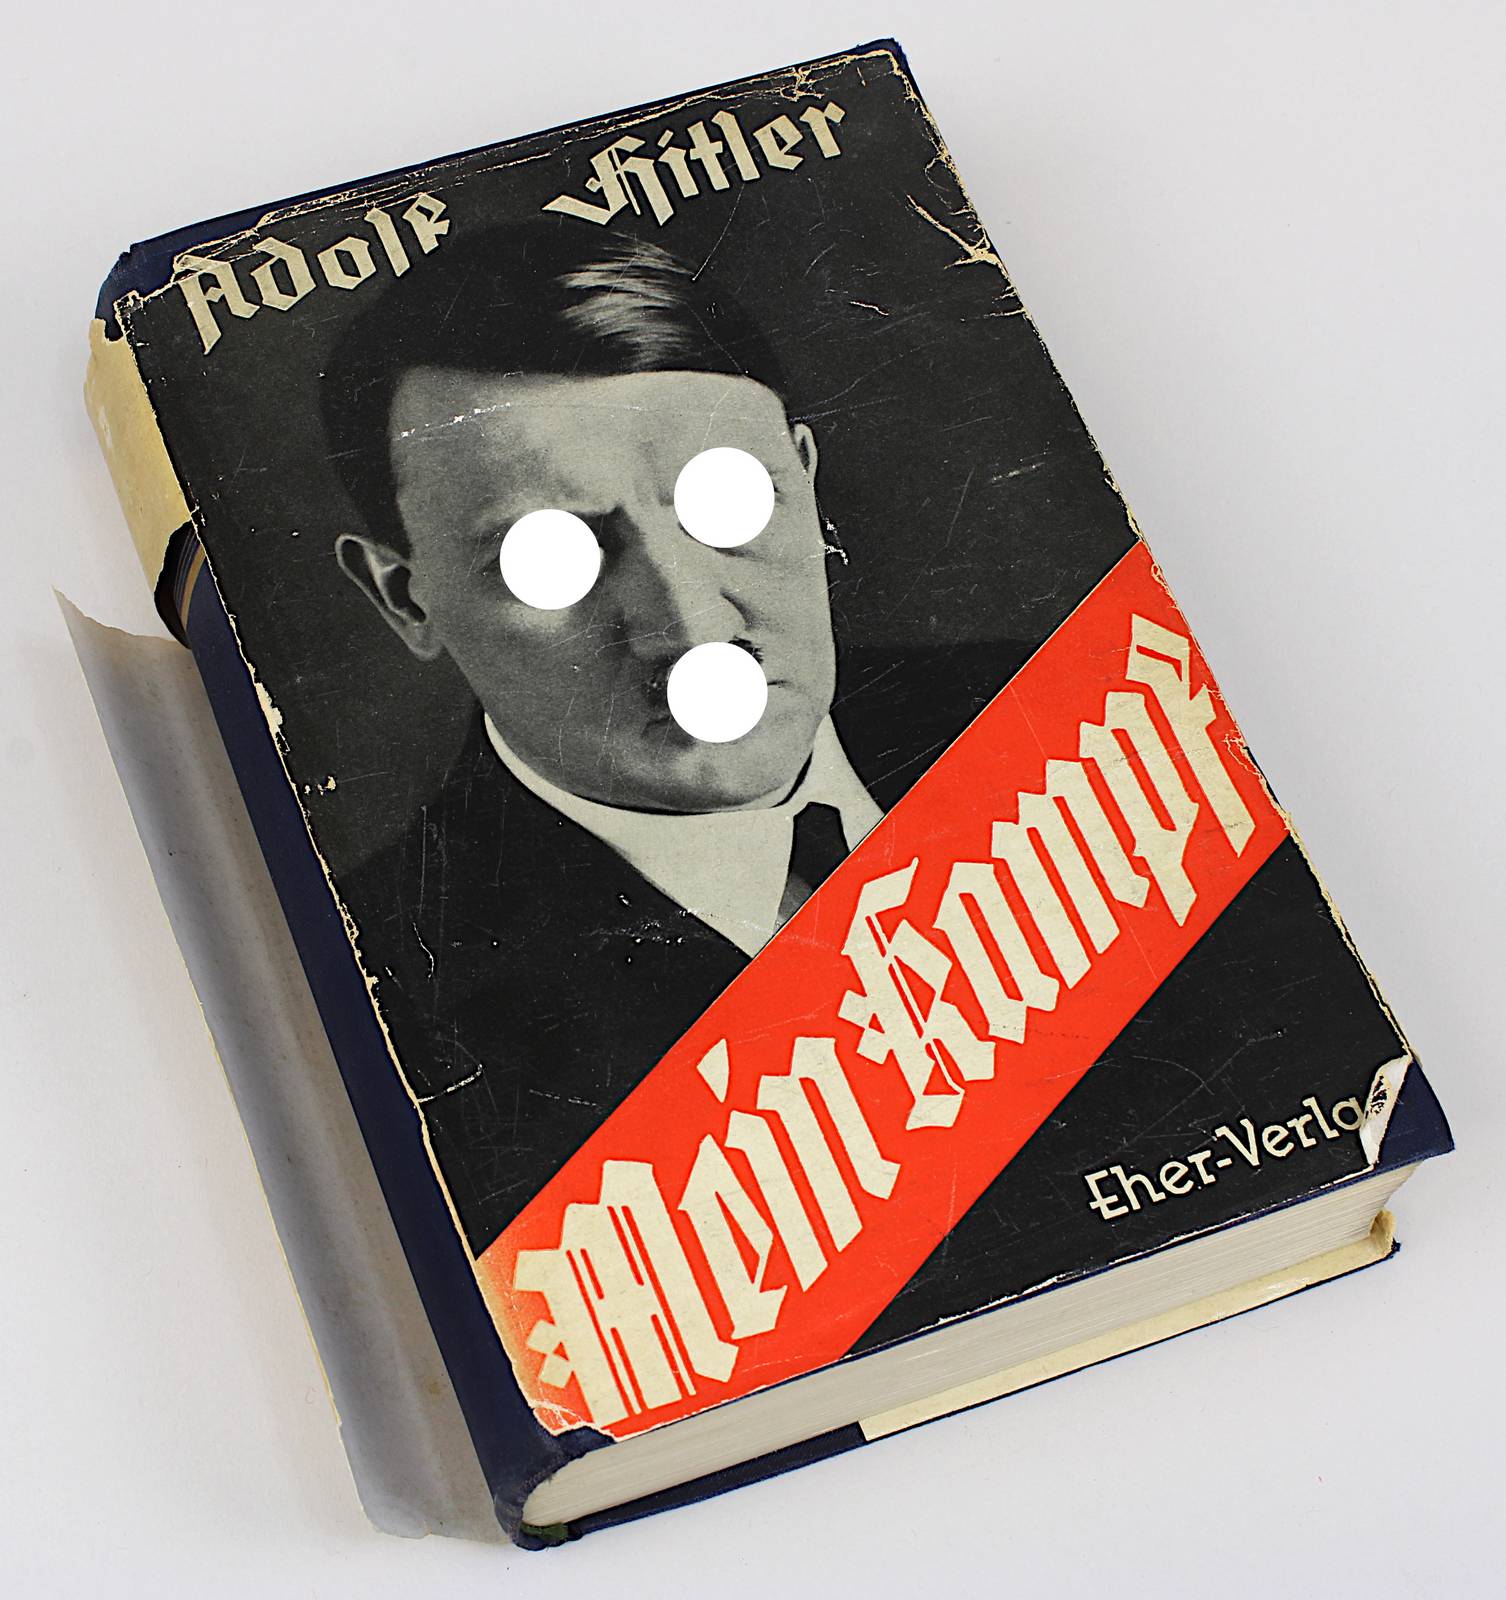 Hitler, Adolf "Mein Kampf", zwei Bände in einem Band, 178. - 180. Auflage, Zentralverlag der